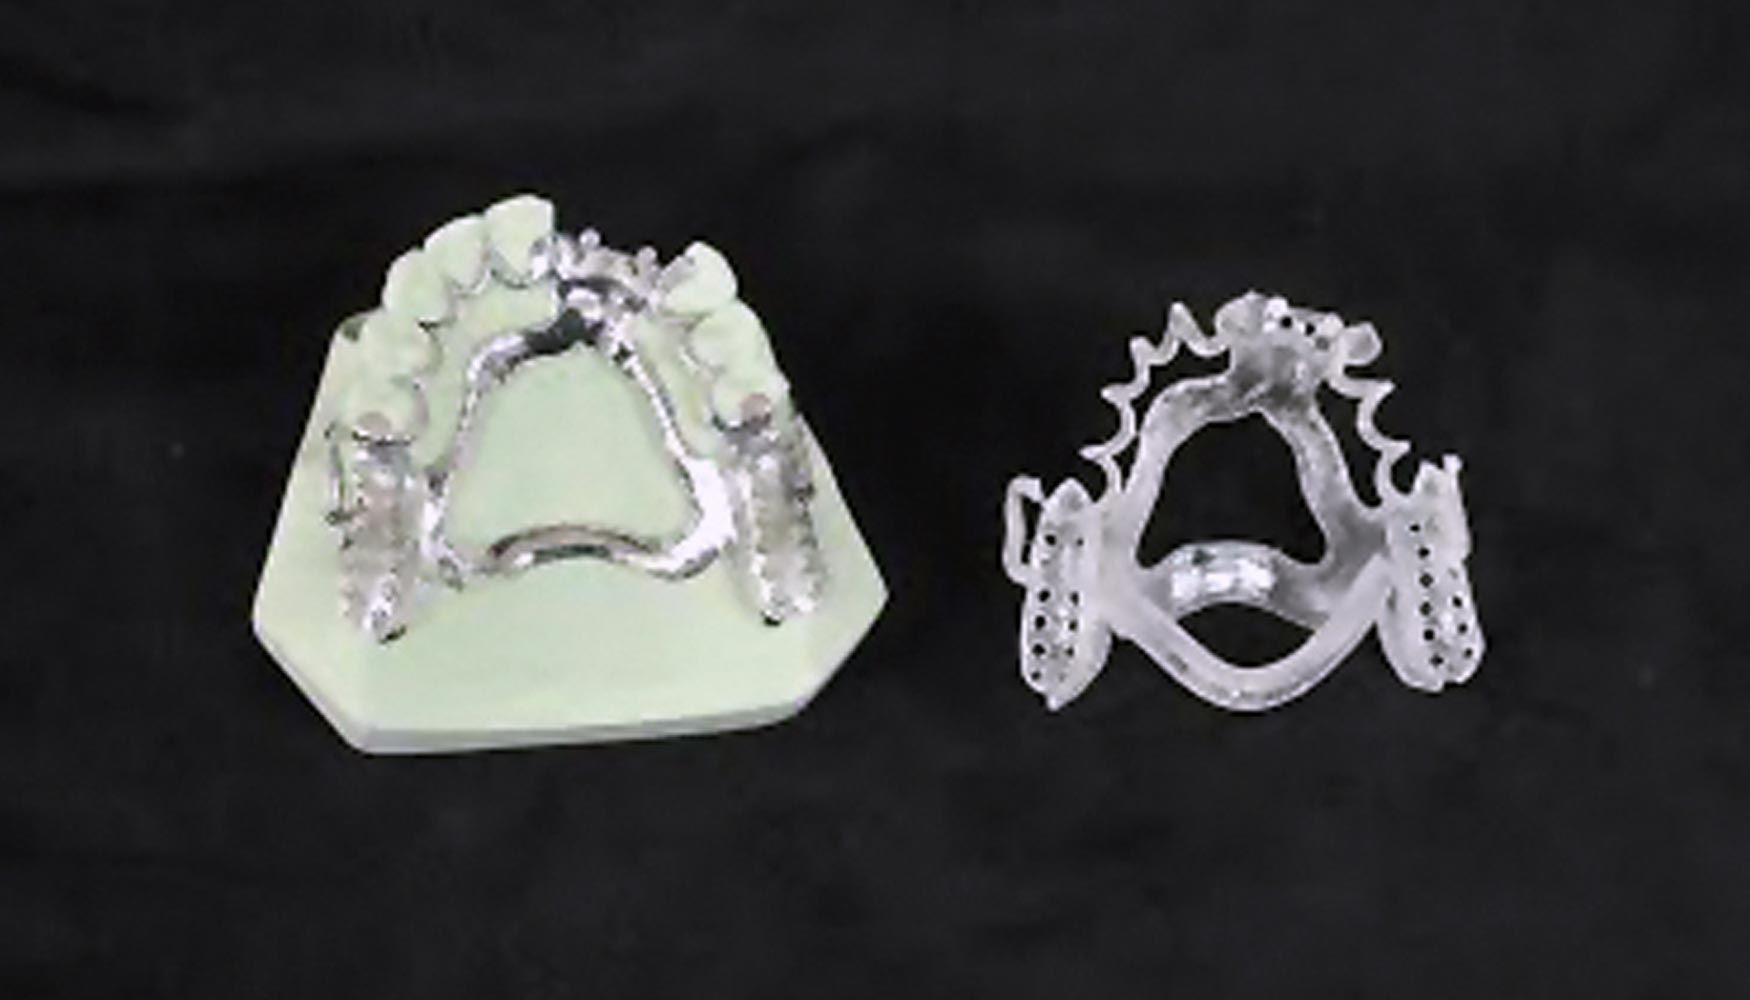 Permite imprimir patrones de vaciado para prtesis removibles fabricadas con material MED610 en la compacta y verstil impresora 3D Objet30 Dental...